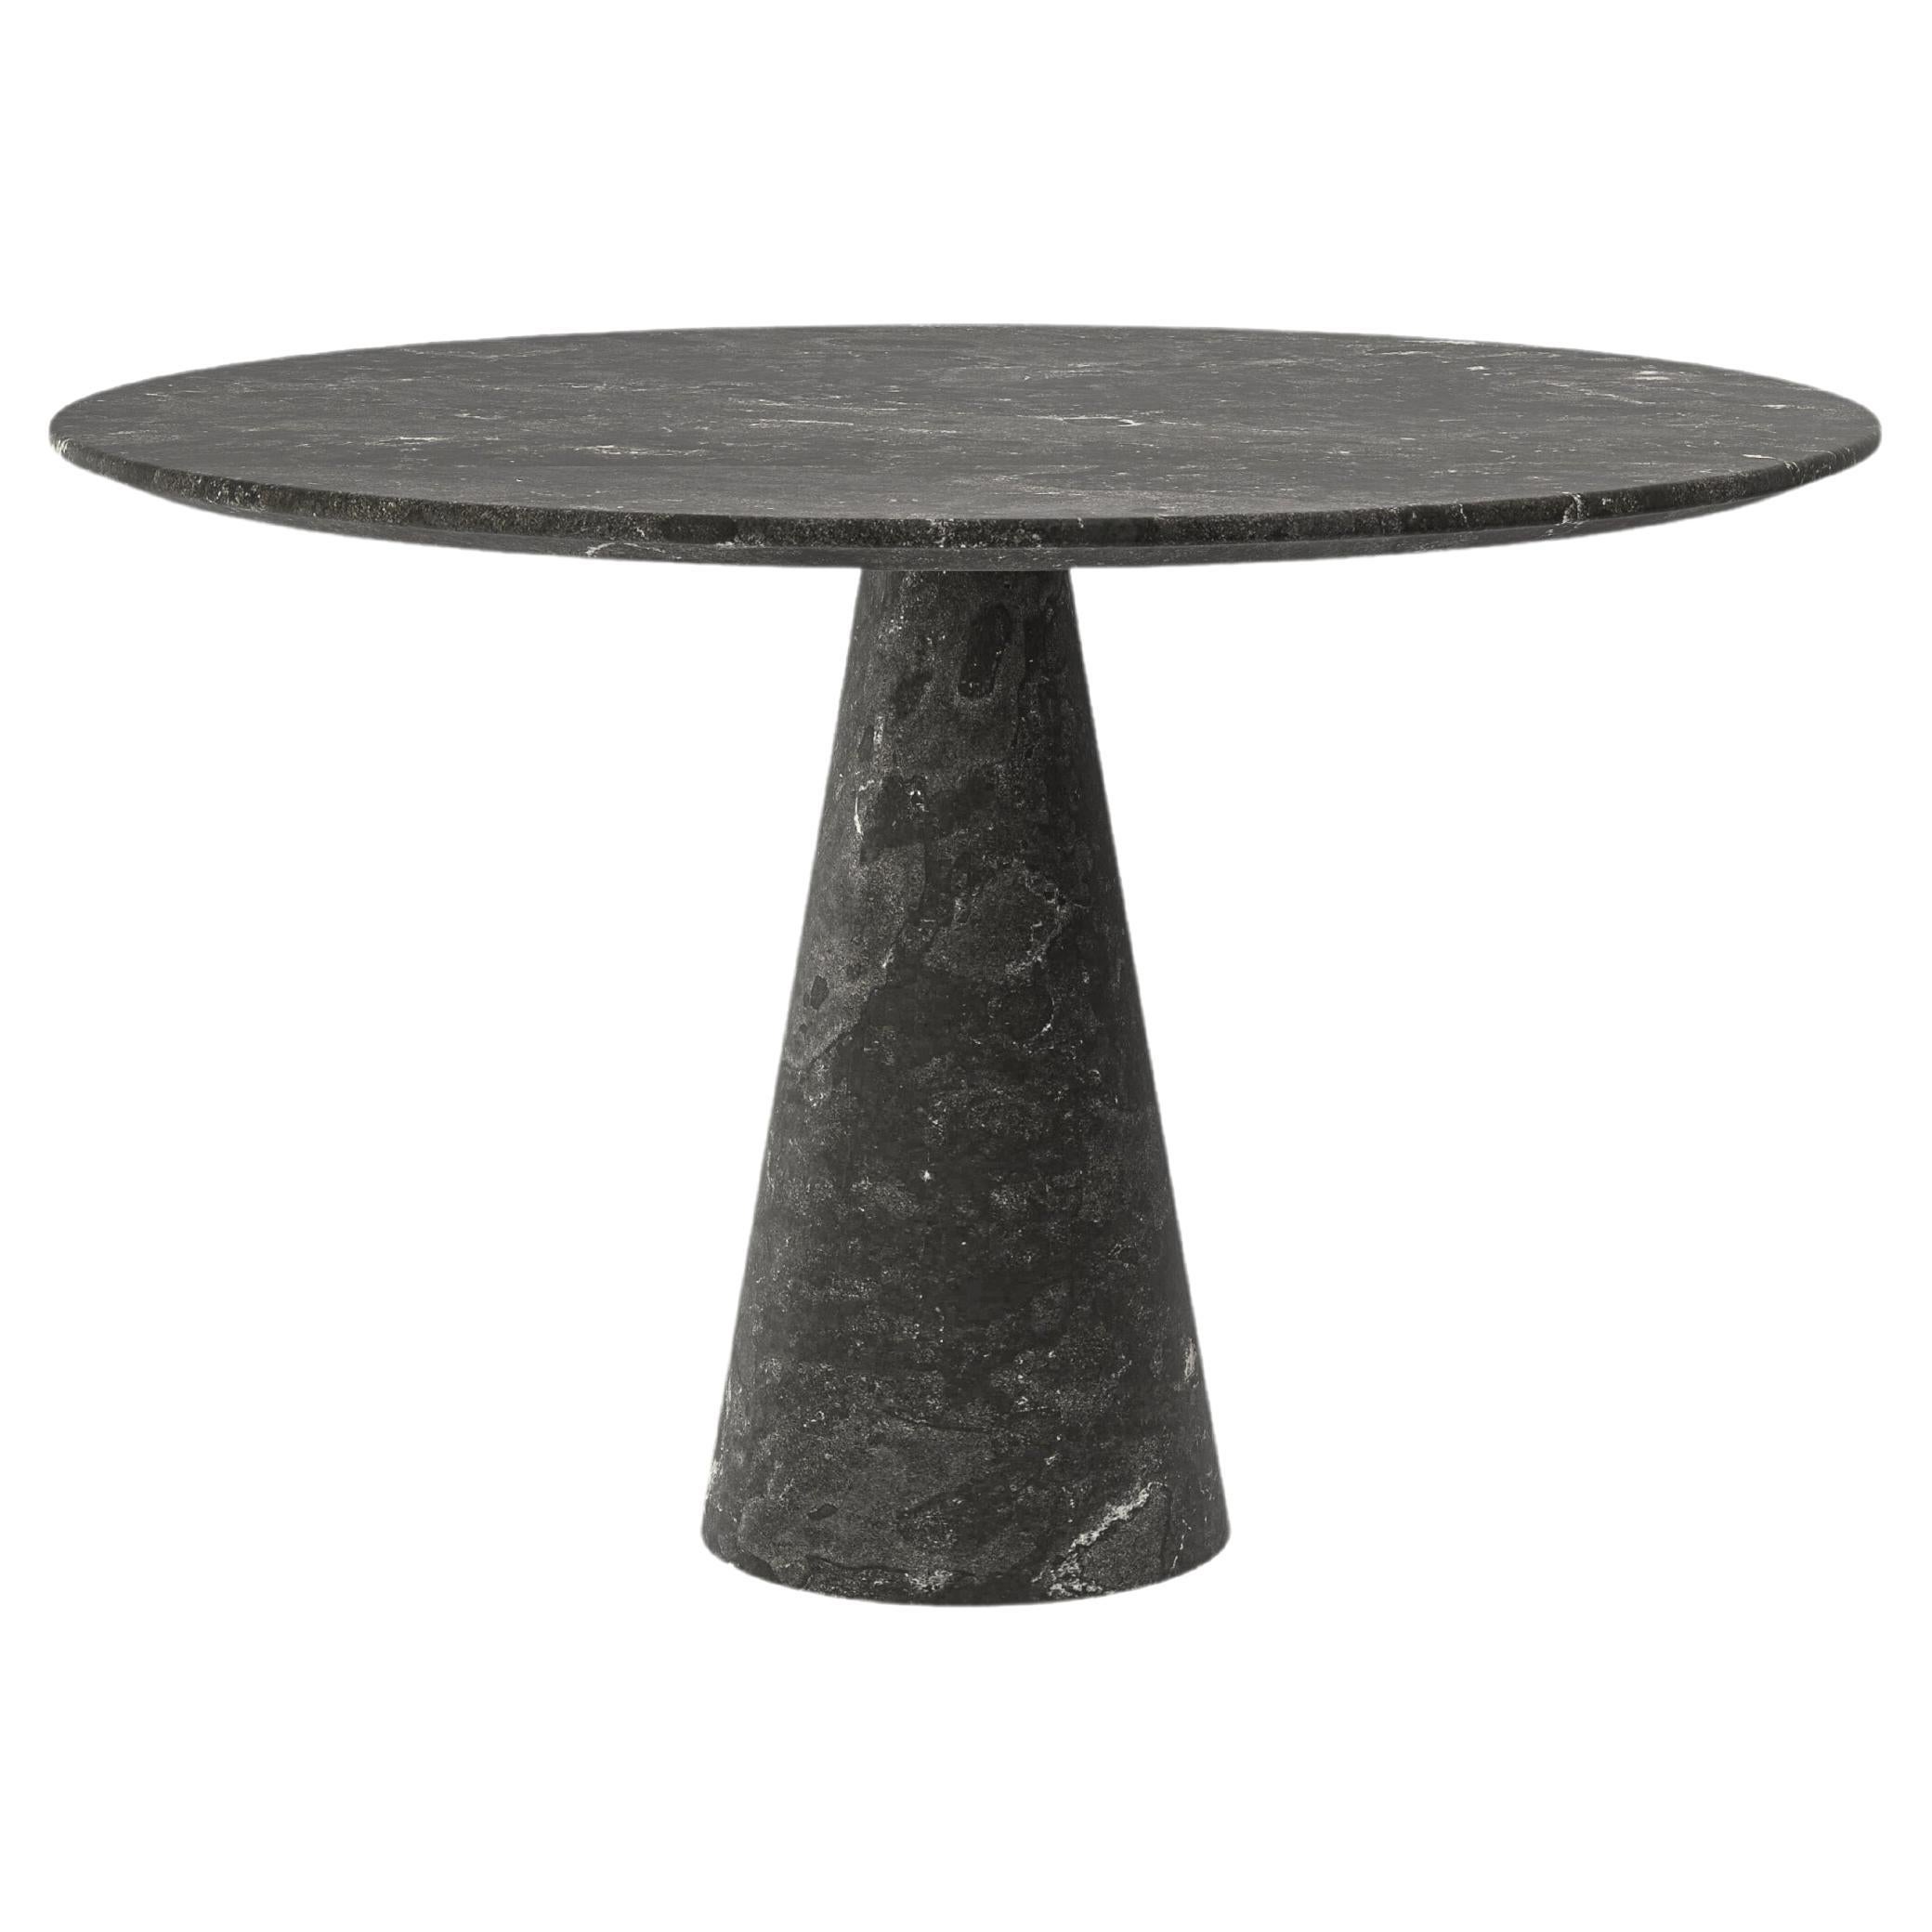 FORM(LA) Cono Round Dining Table 48”L x 48”W x 30”H Nero Petite Granite For Sale